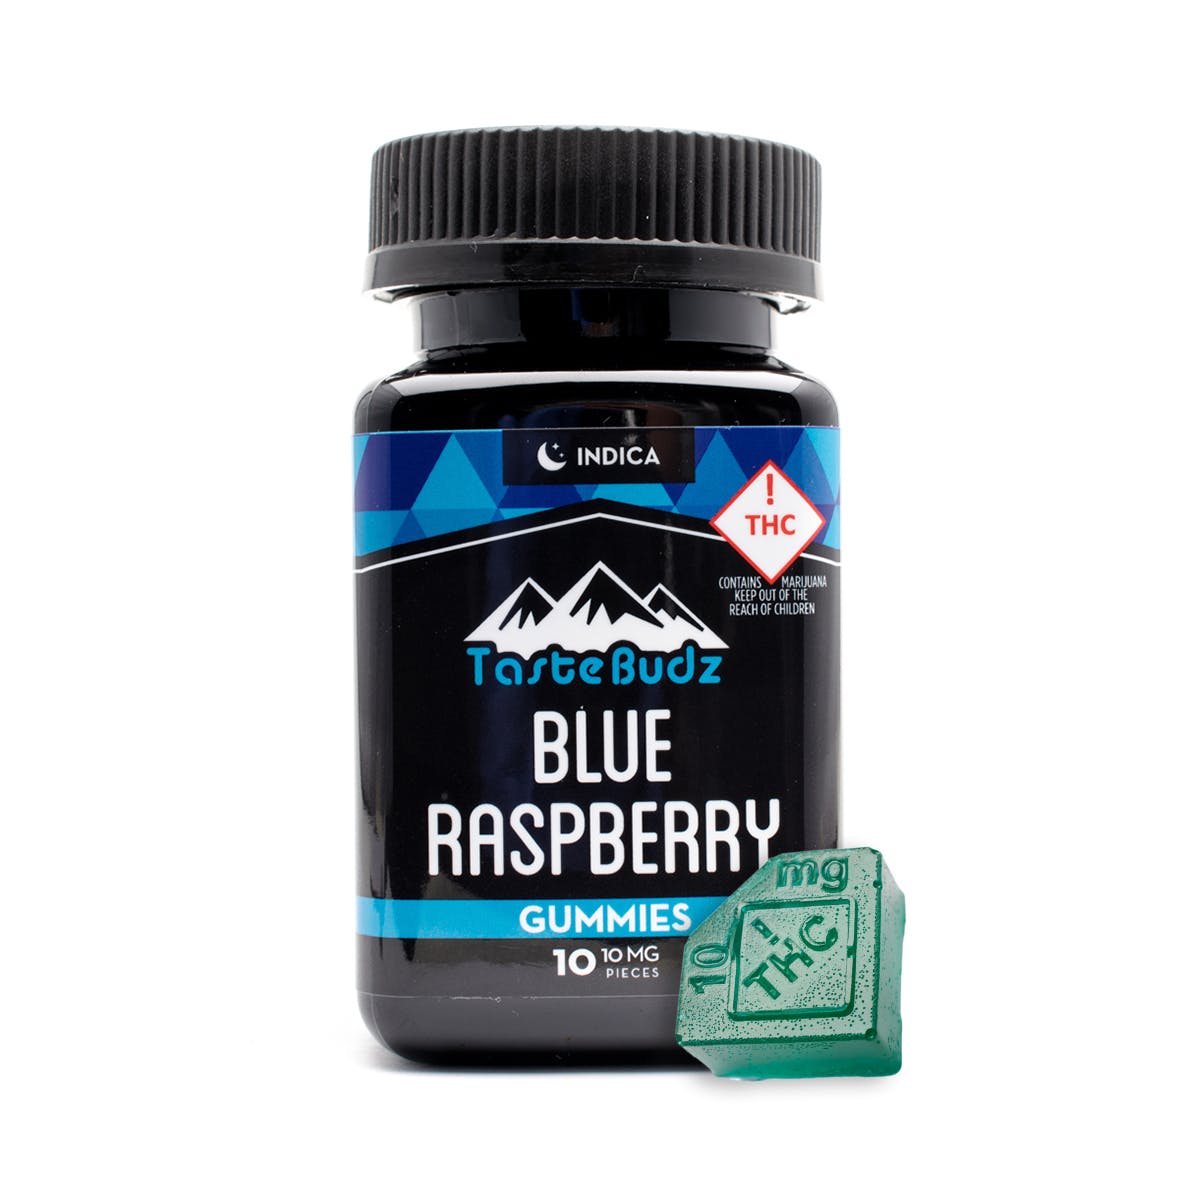 marijuana-dispensaries-oneeleven-in-moffat-indica-blue-raspberry-gummies-100mg